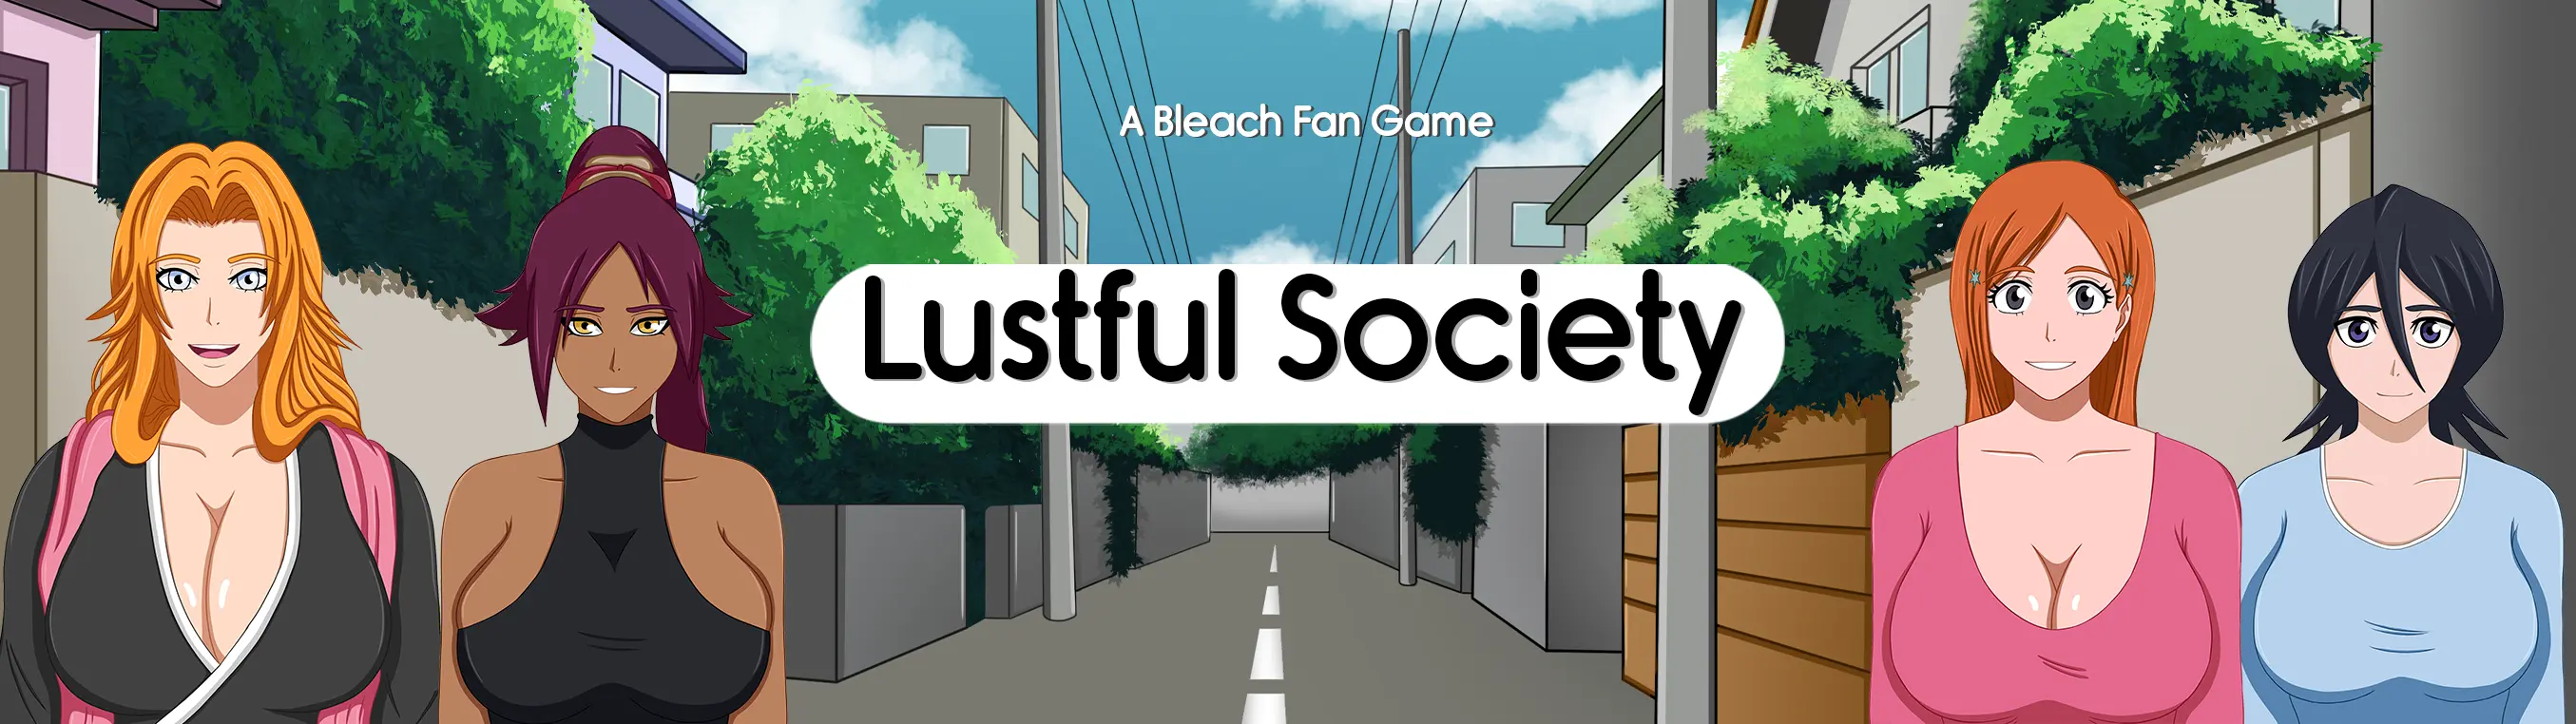 Lustful Society main image